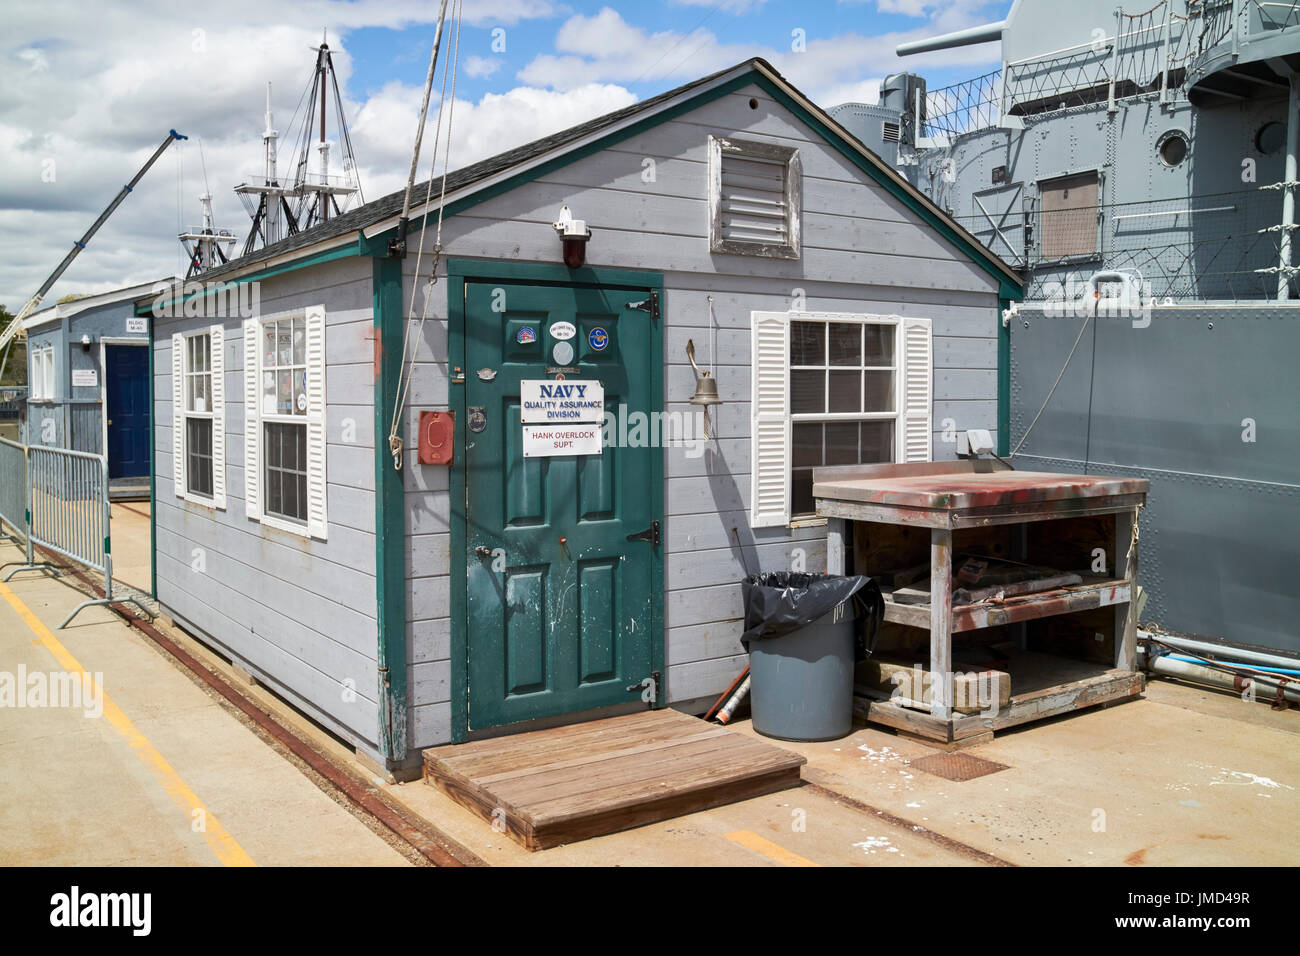 La marine en bois petite division assurance qualité hut sur quai Charlestown Navy Yard Boston USA Banque D'Images